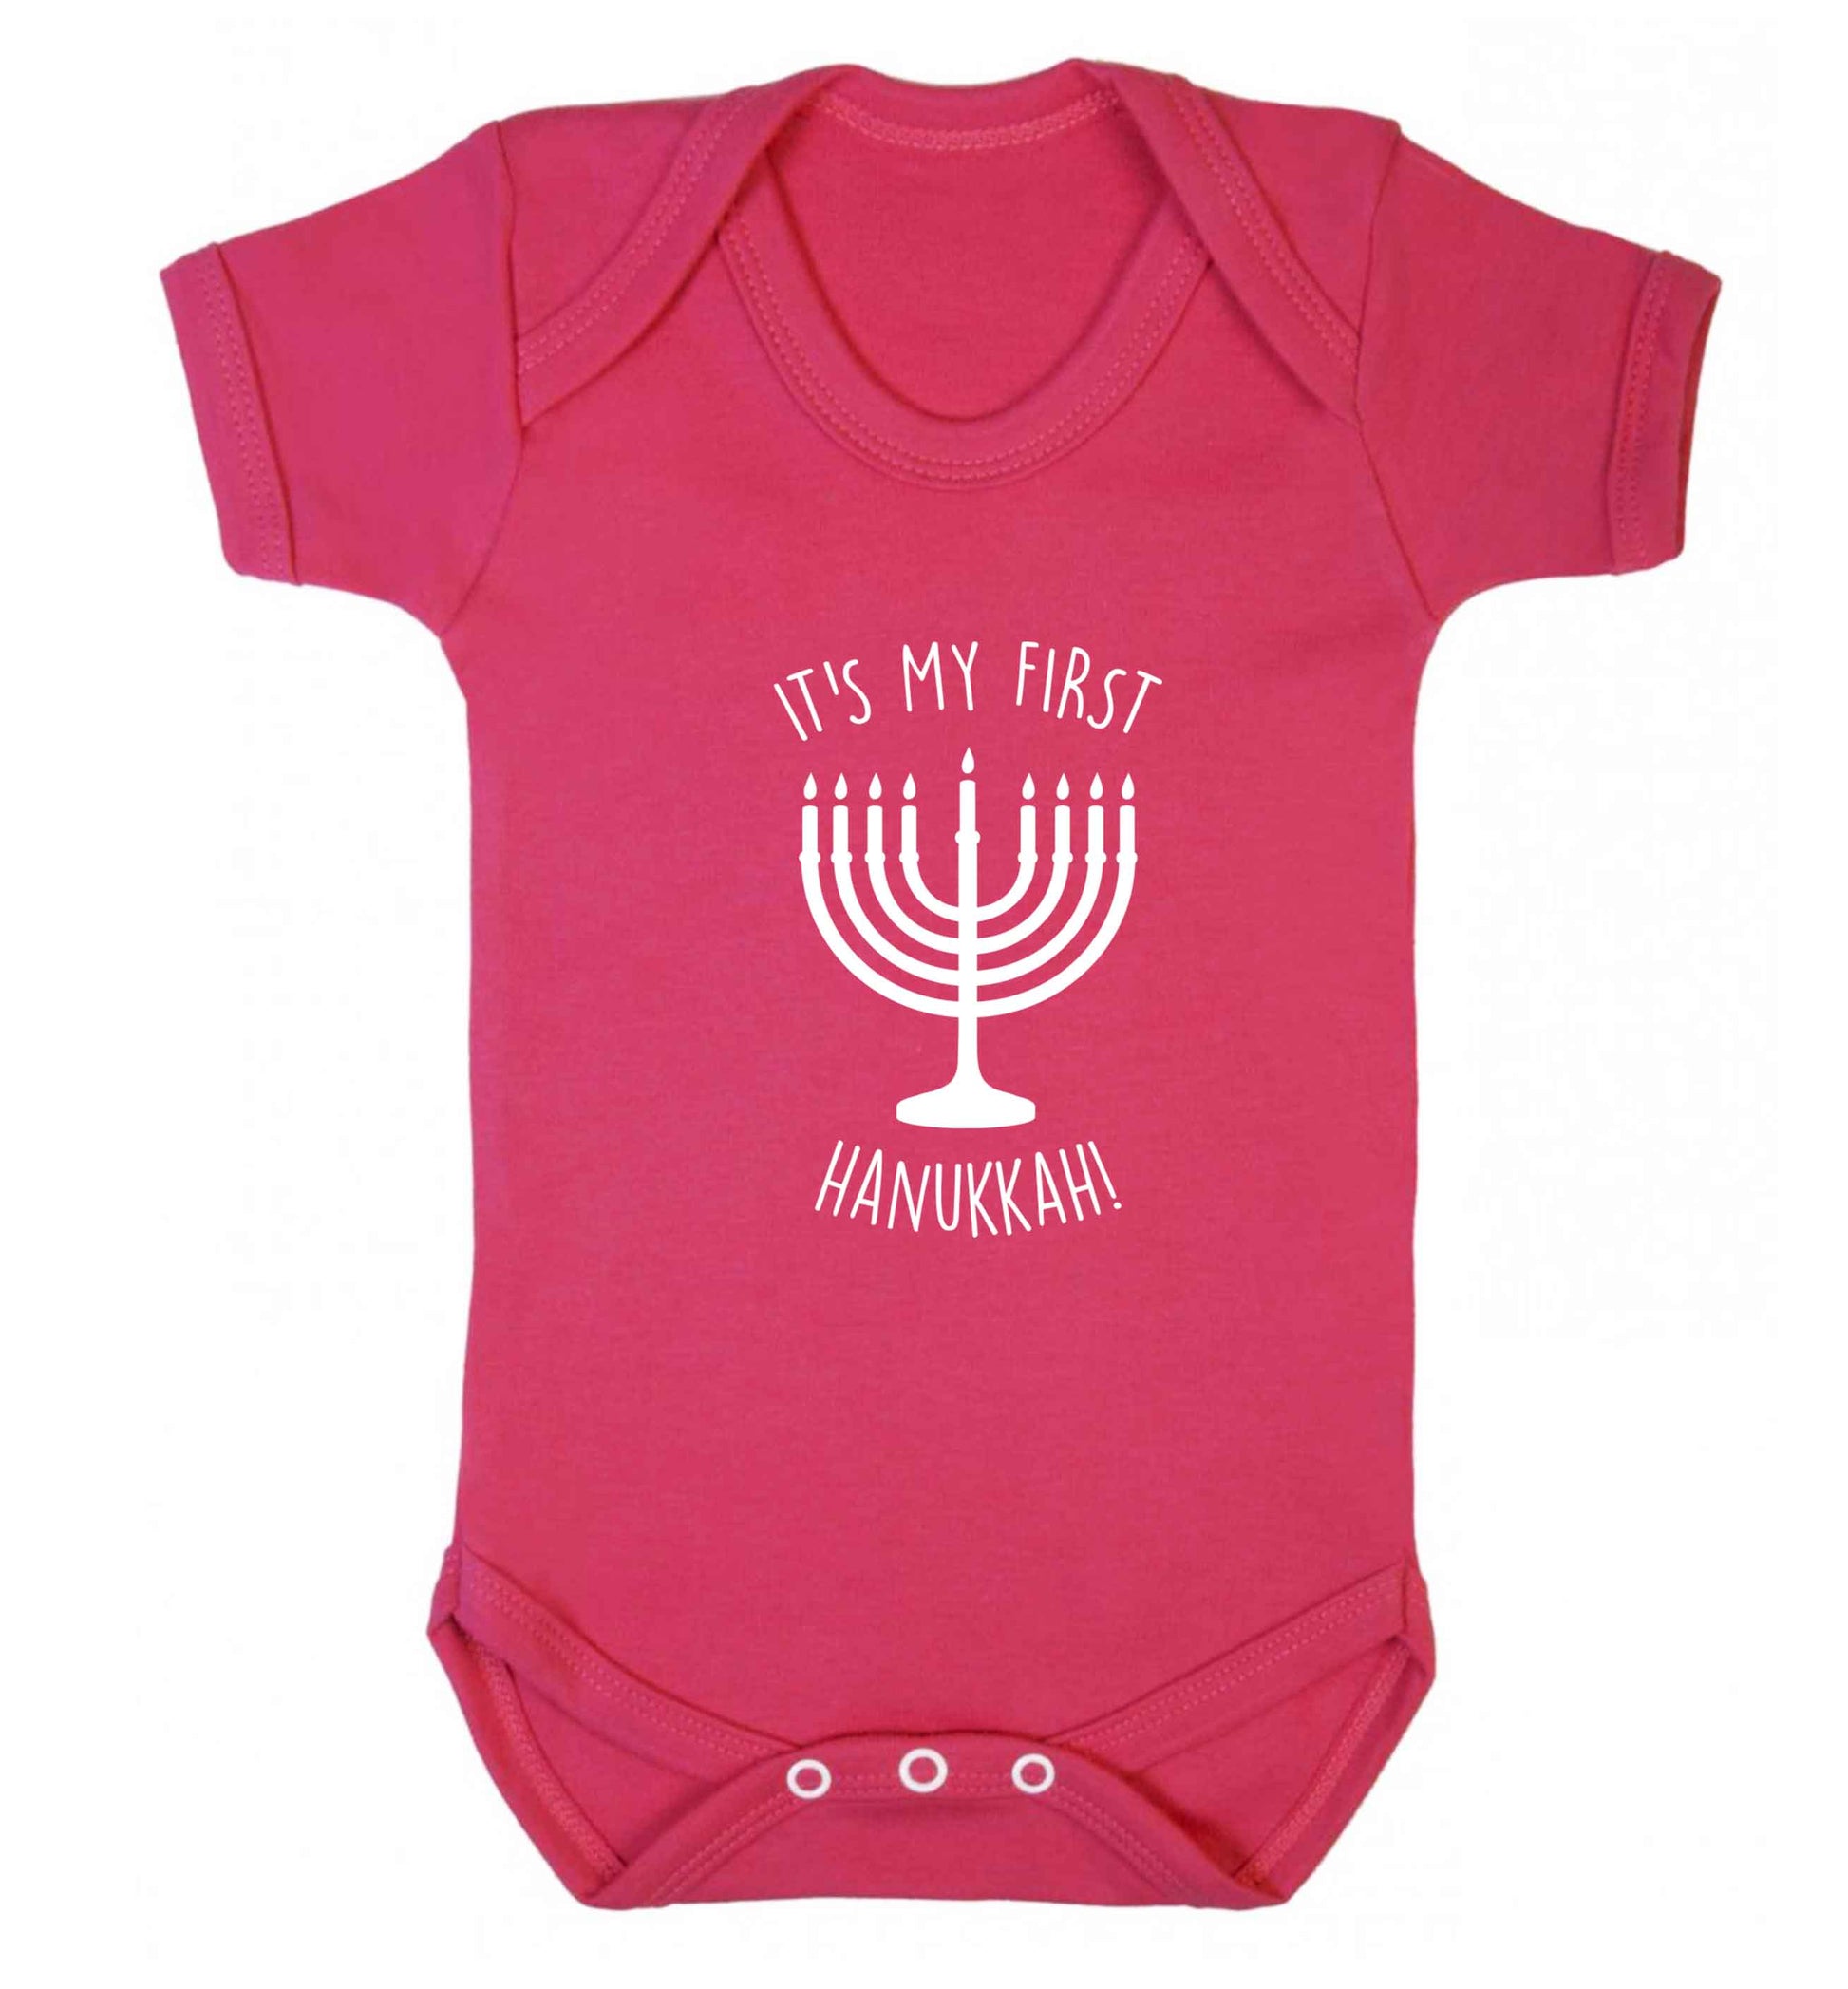 It's my first hanukkah baby vest dark pink 18-24 months